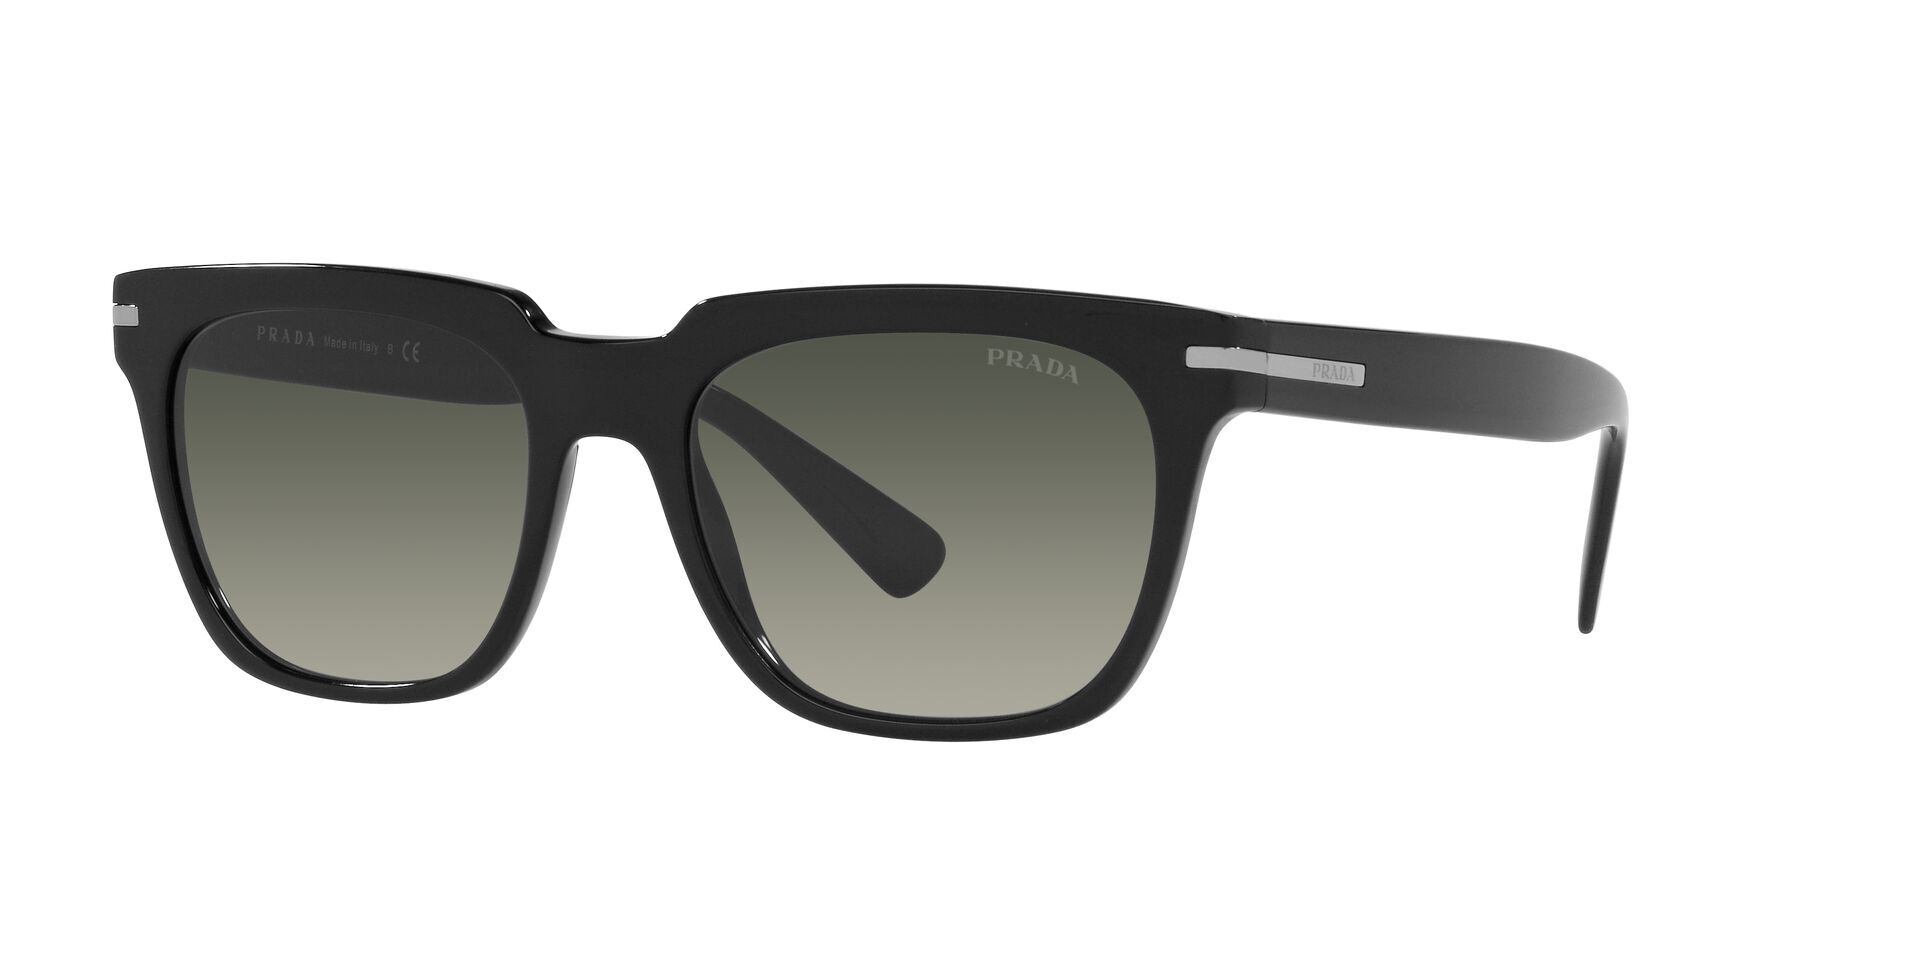 Prada-04y/s 1ab2d0 Black/grey Gradient 56*19 Gafas De Sol Negro